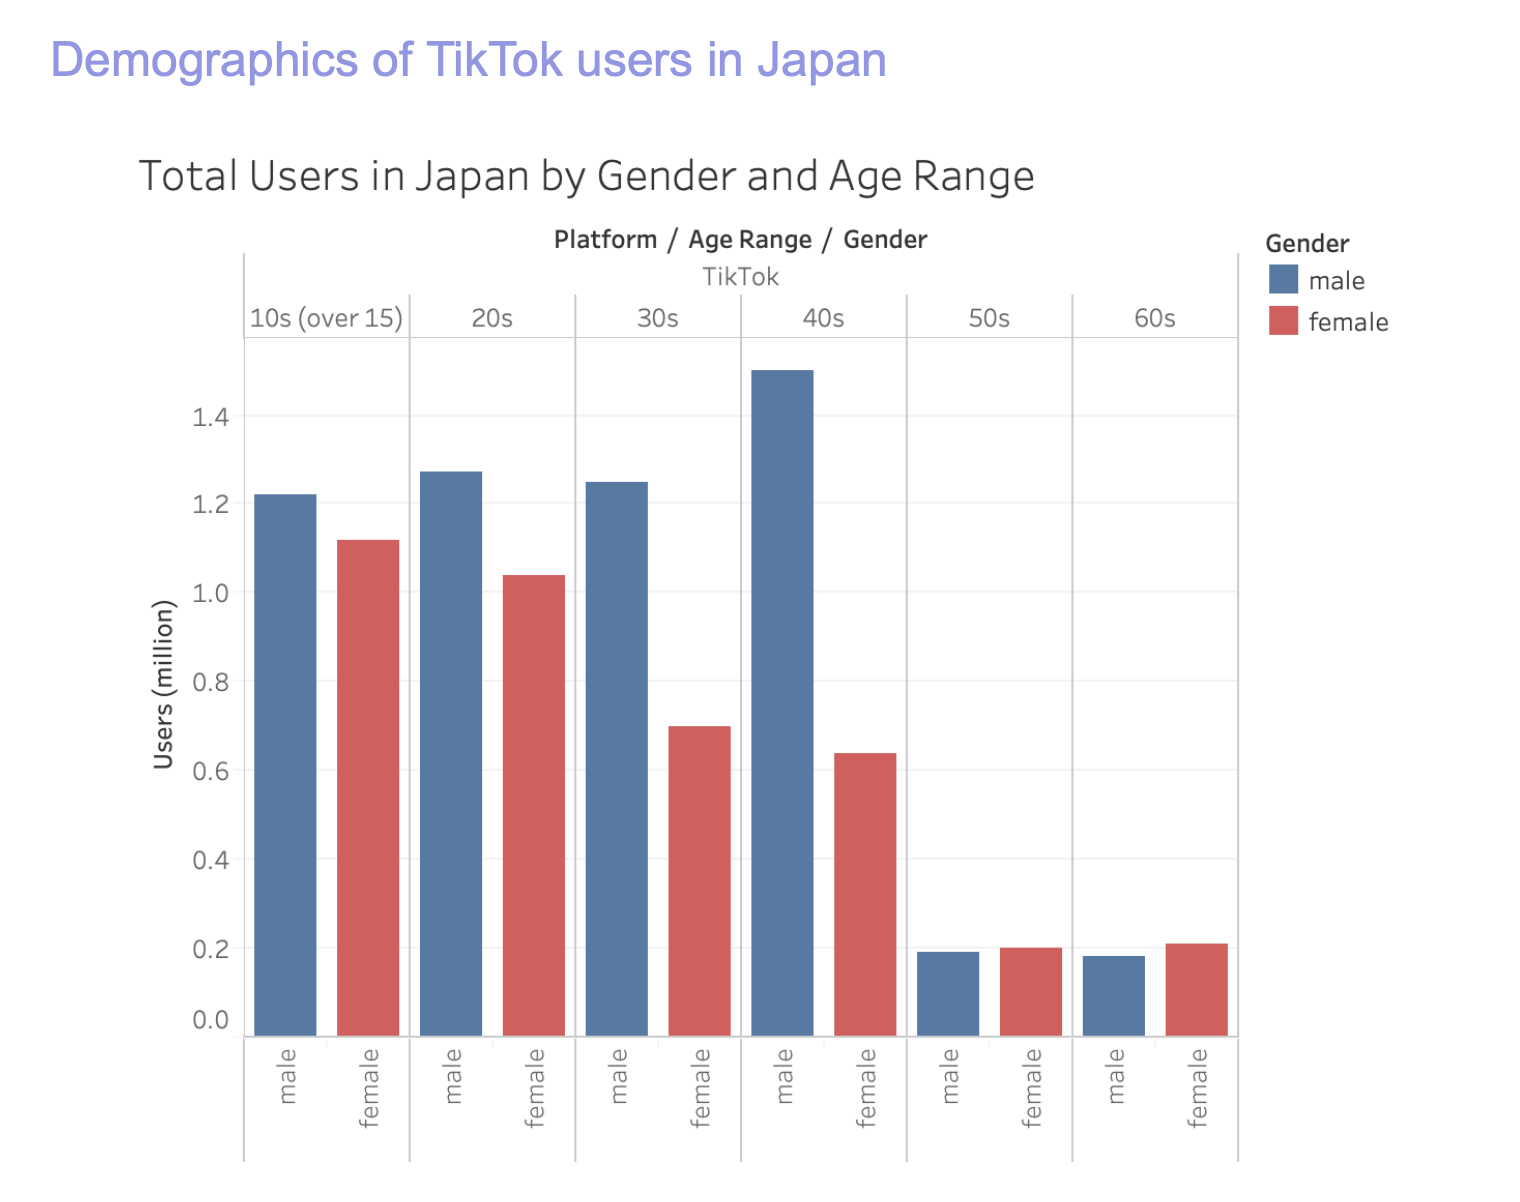 TikTokユーザーの年齢層